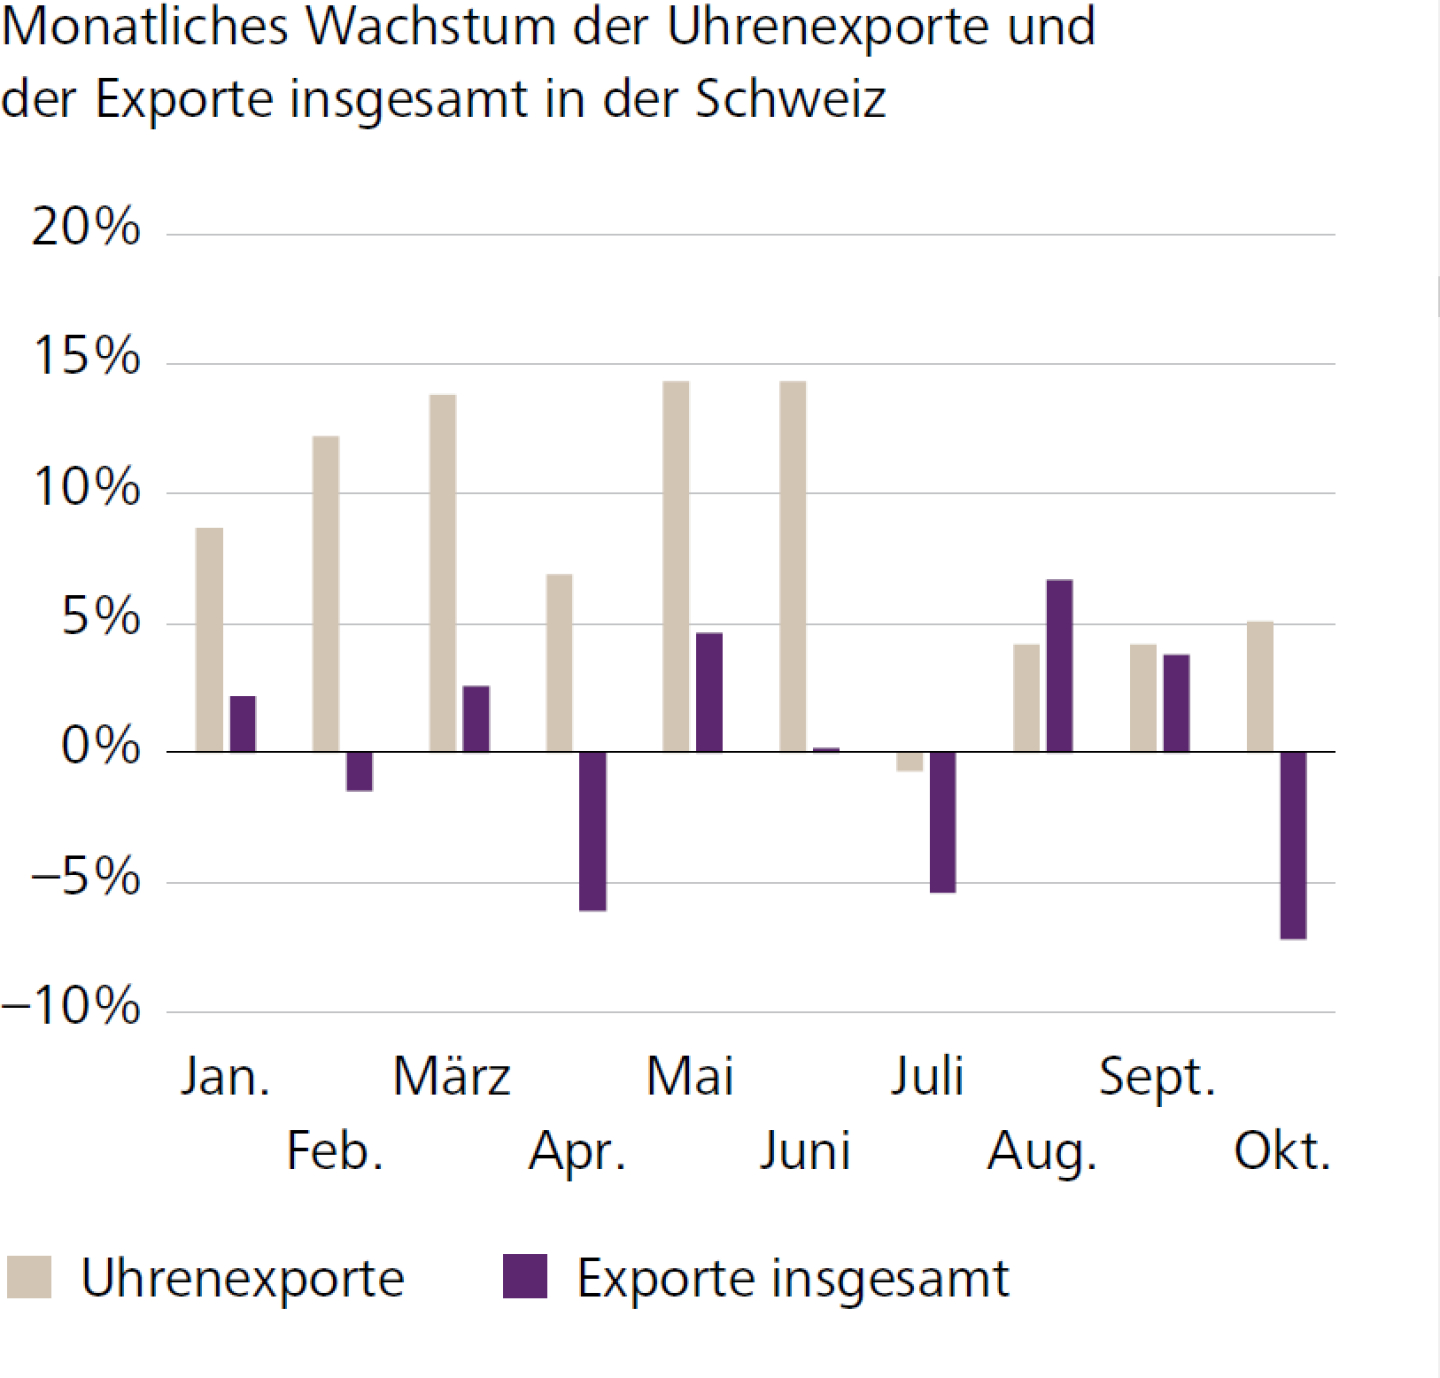 Monatliches Wachstum der Uhrenexporte und der Exporte insgesamt in der Schweiz